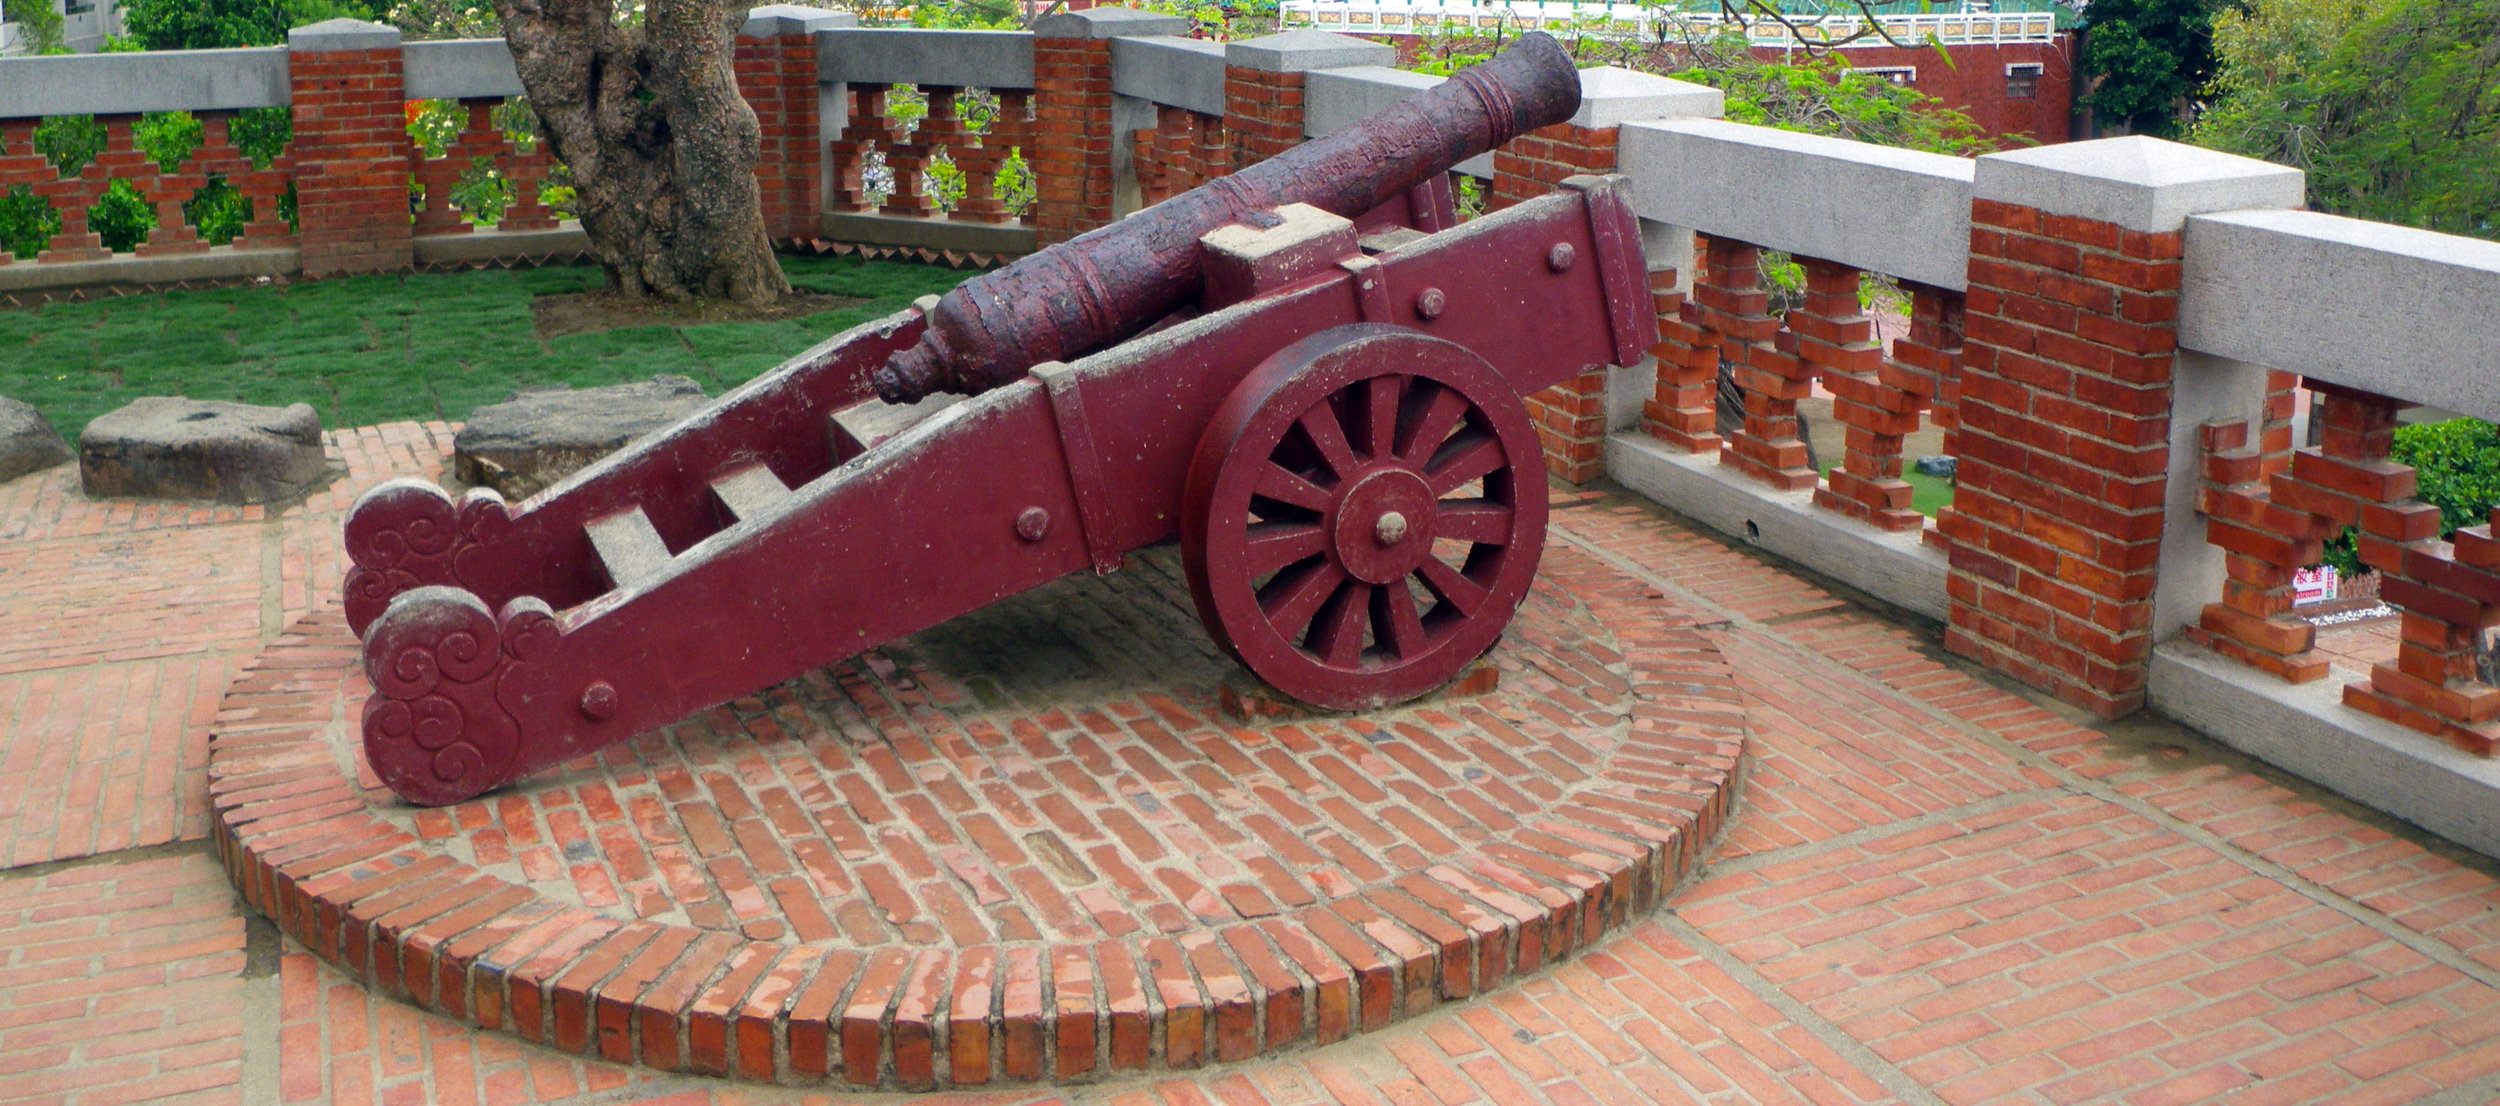 old Dutch cannon.jpg